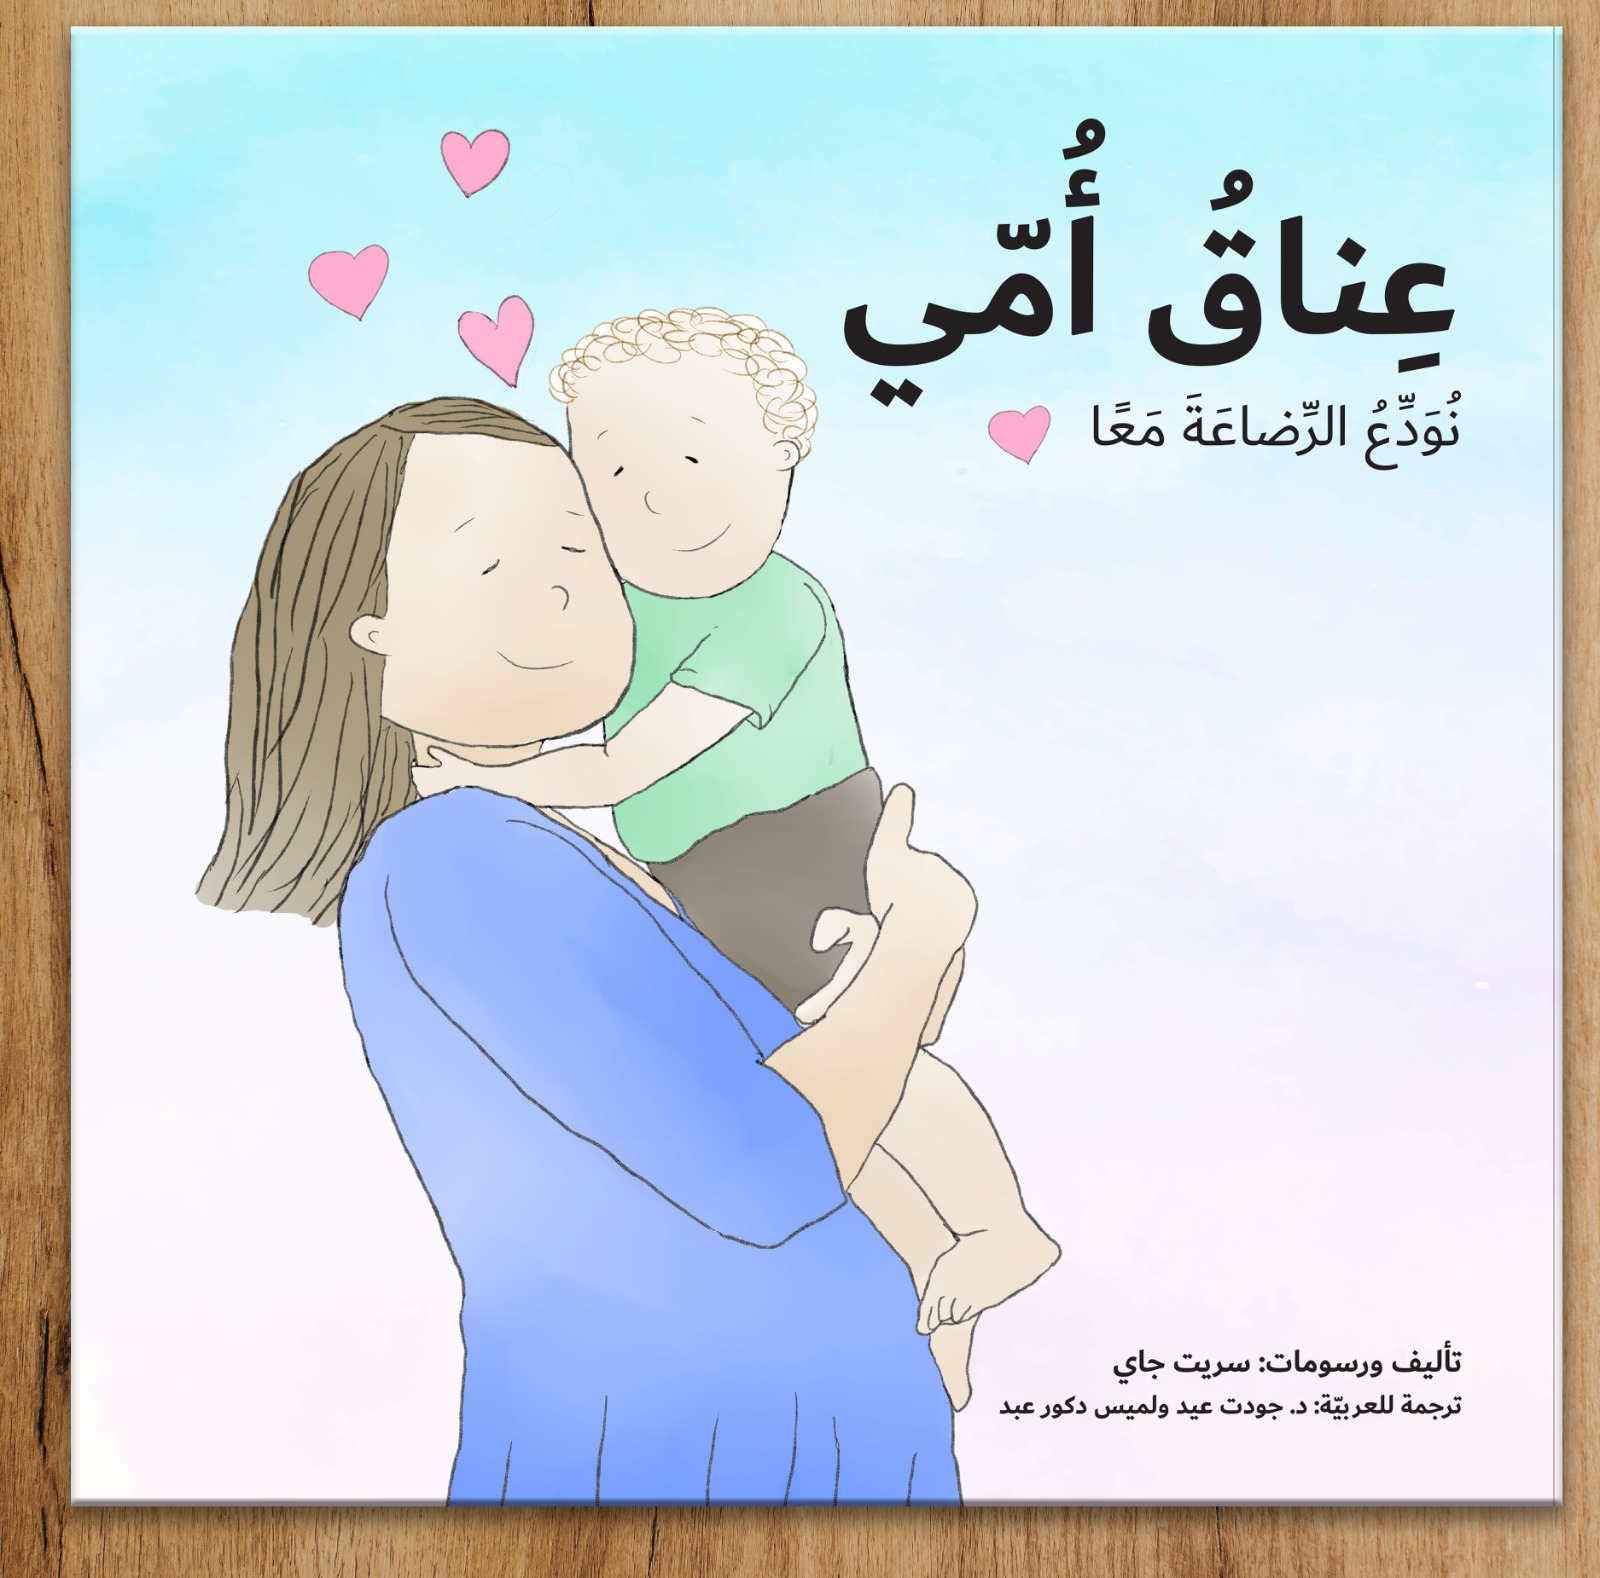 חיבוק של אמא בשפה הערבית - כריכה רכה